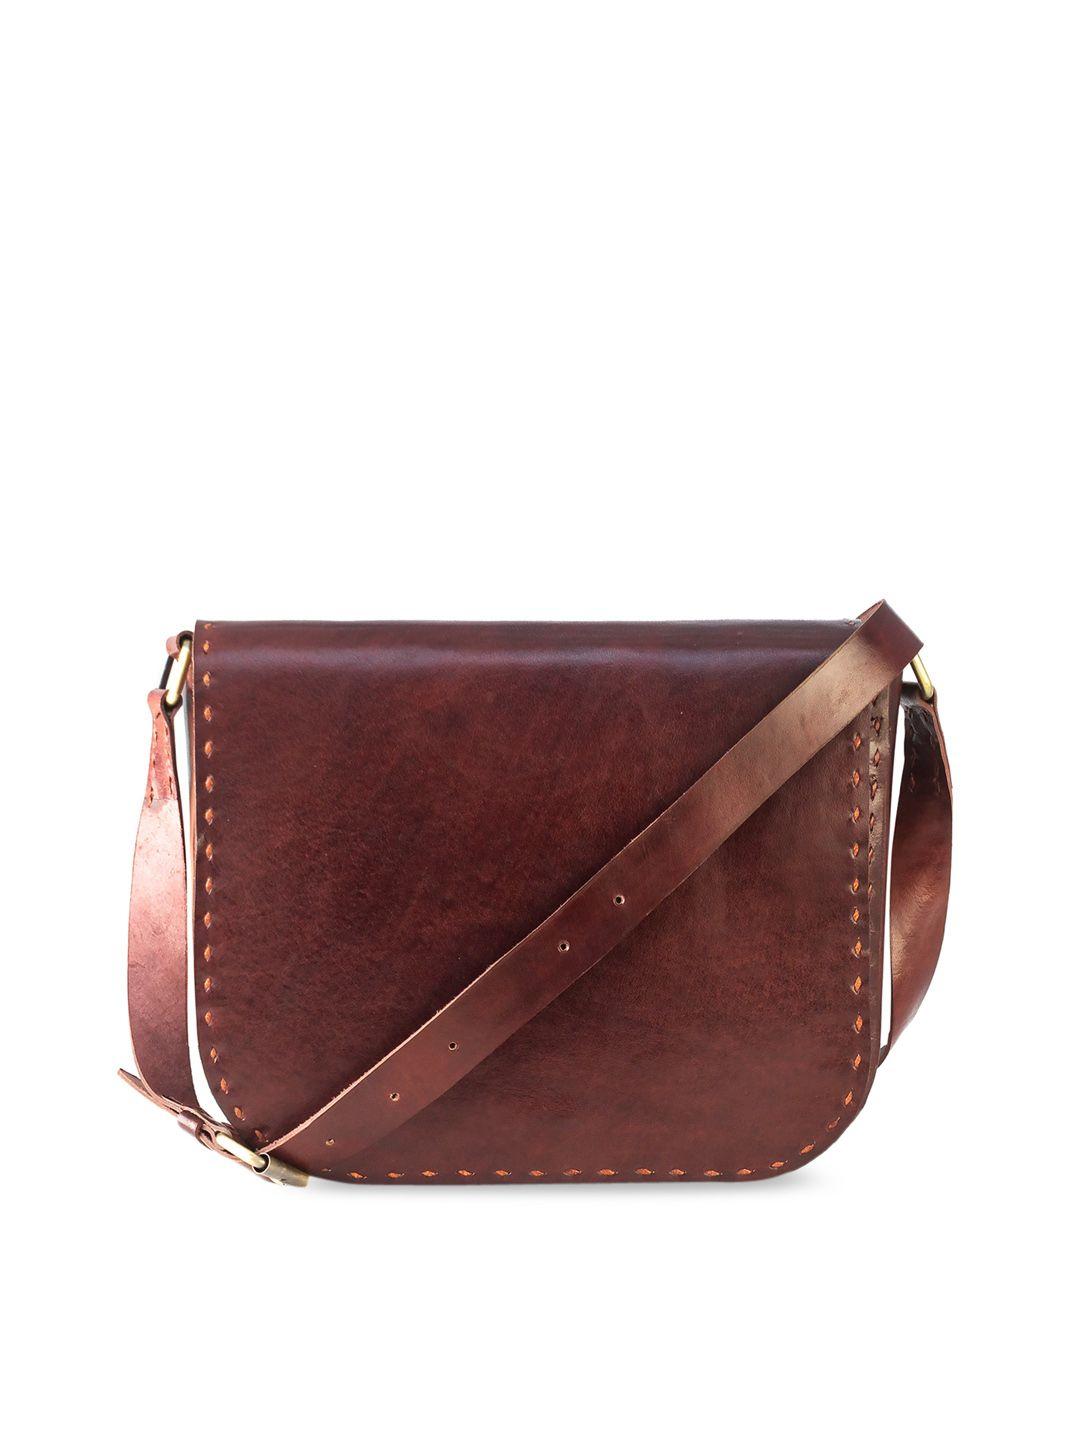 goatter brown leather structured sling bag